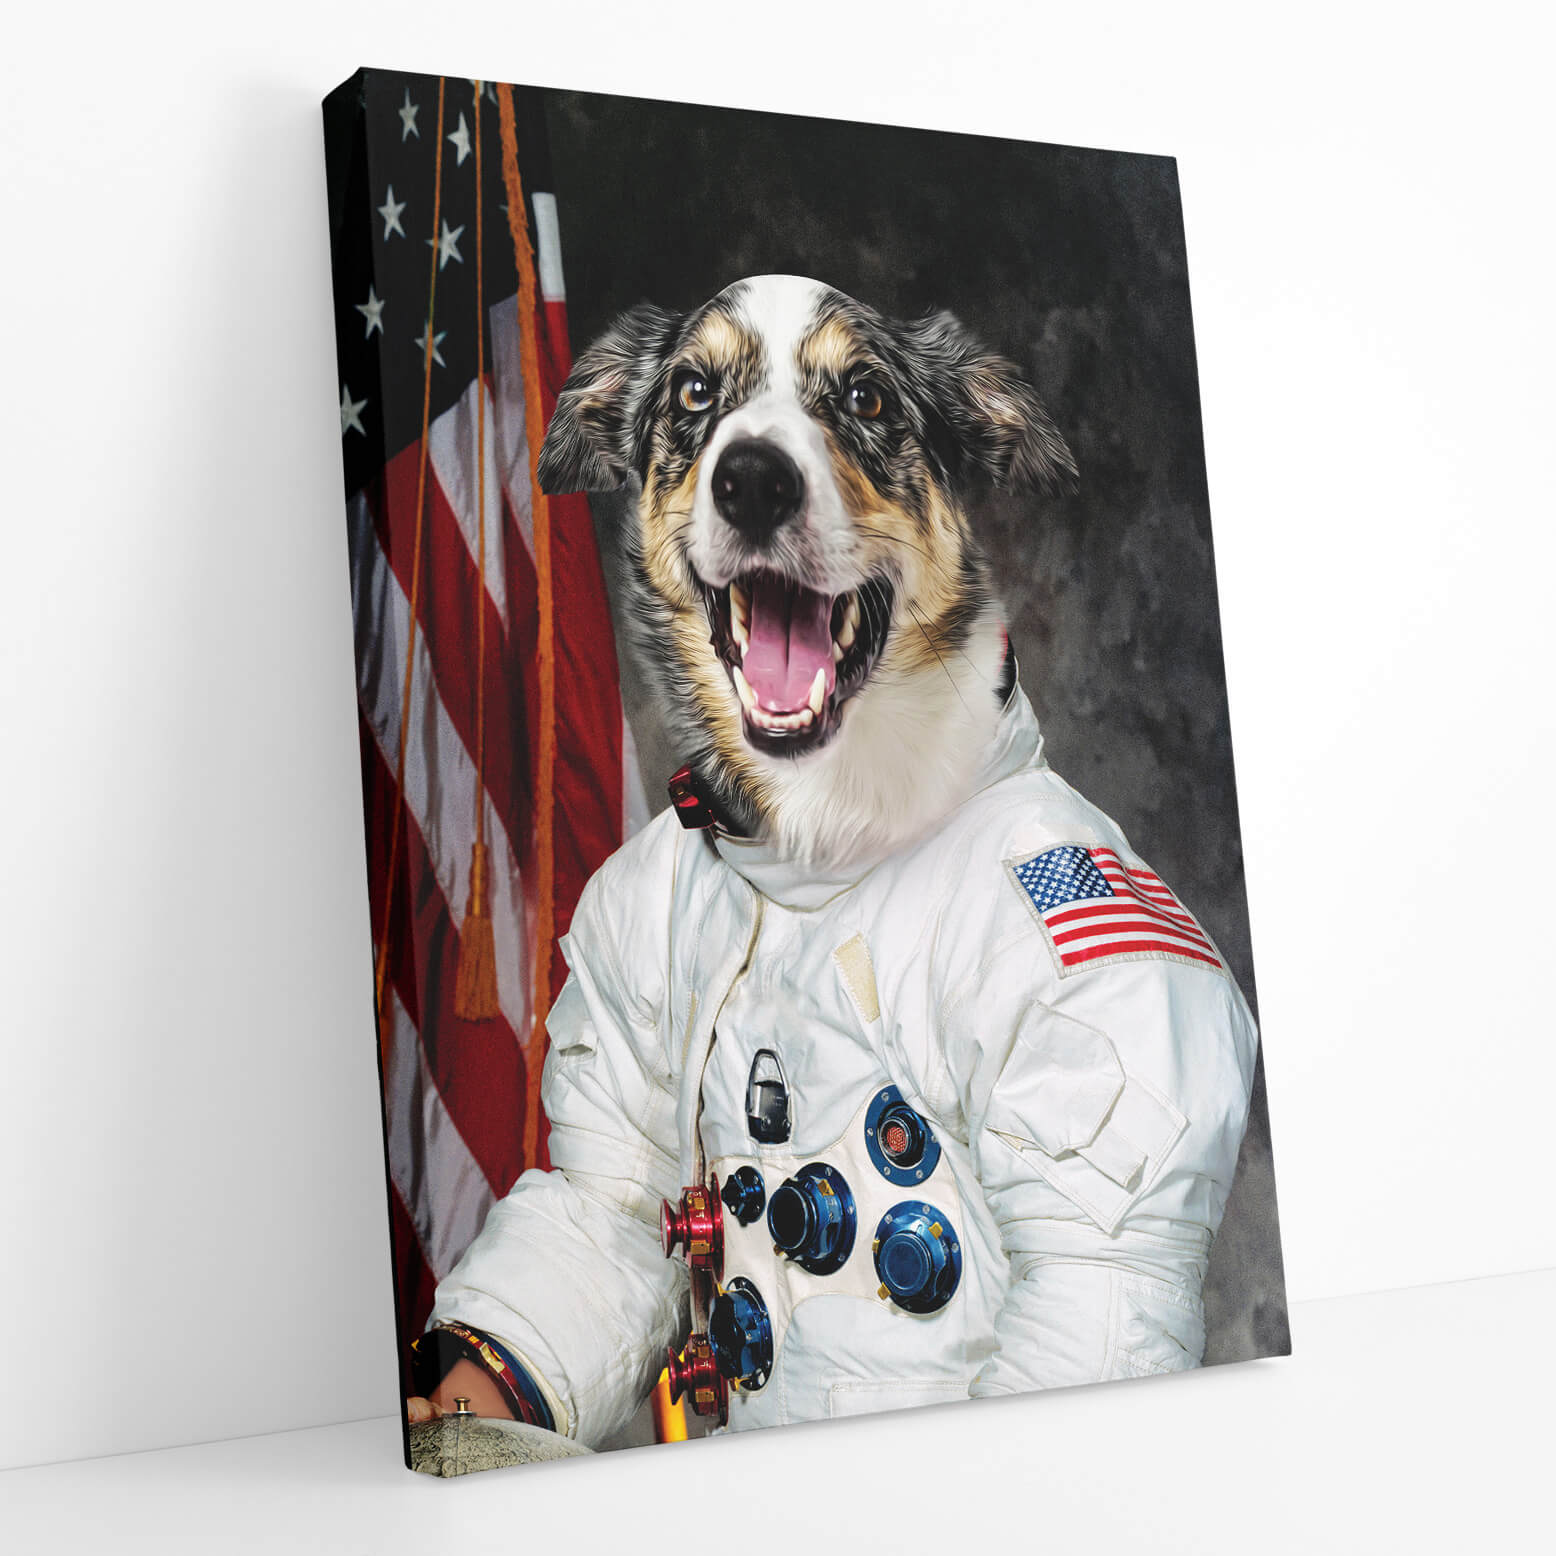 Dog Astronaut Portrait Canvas Print